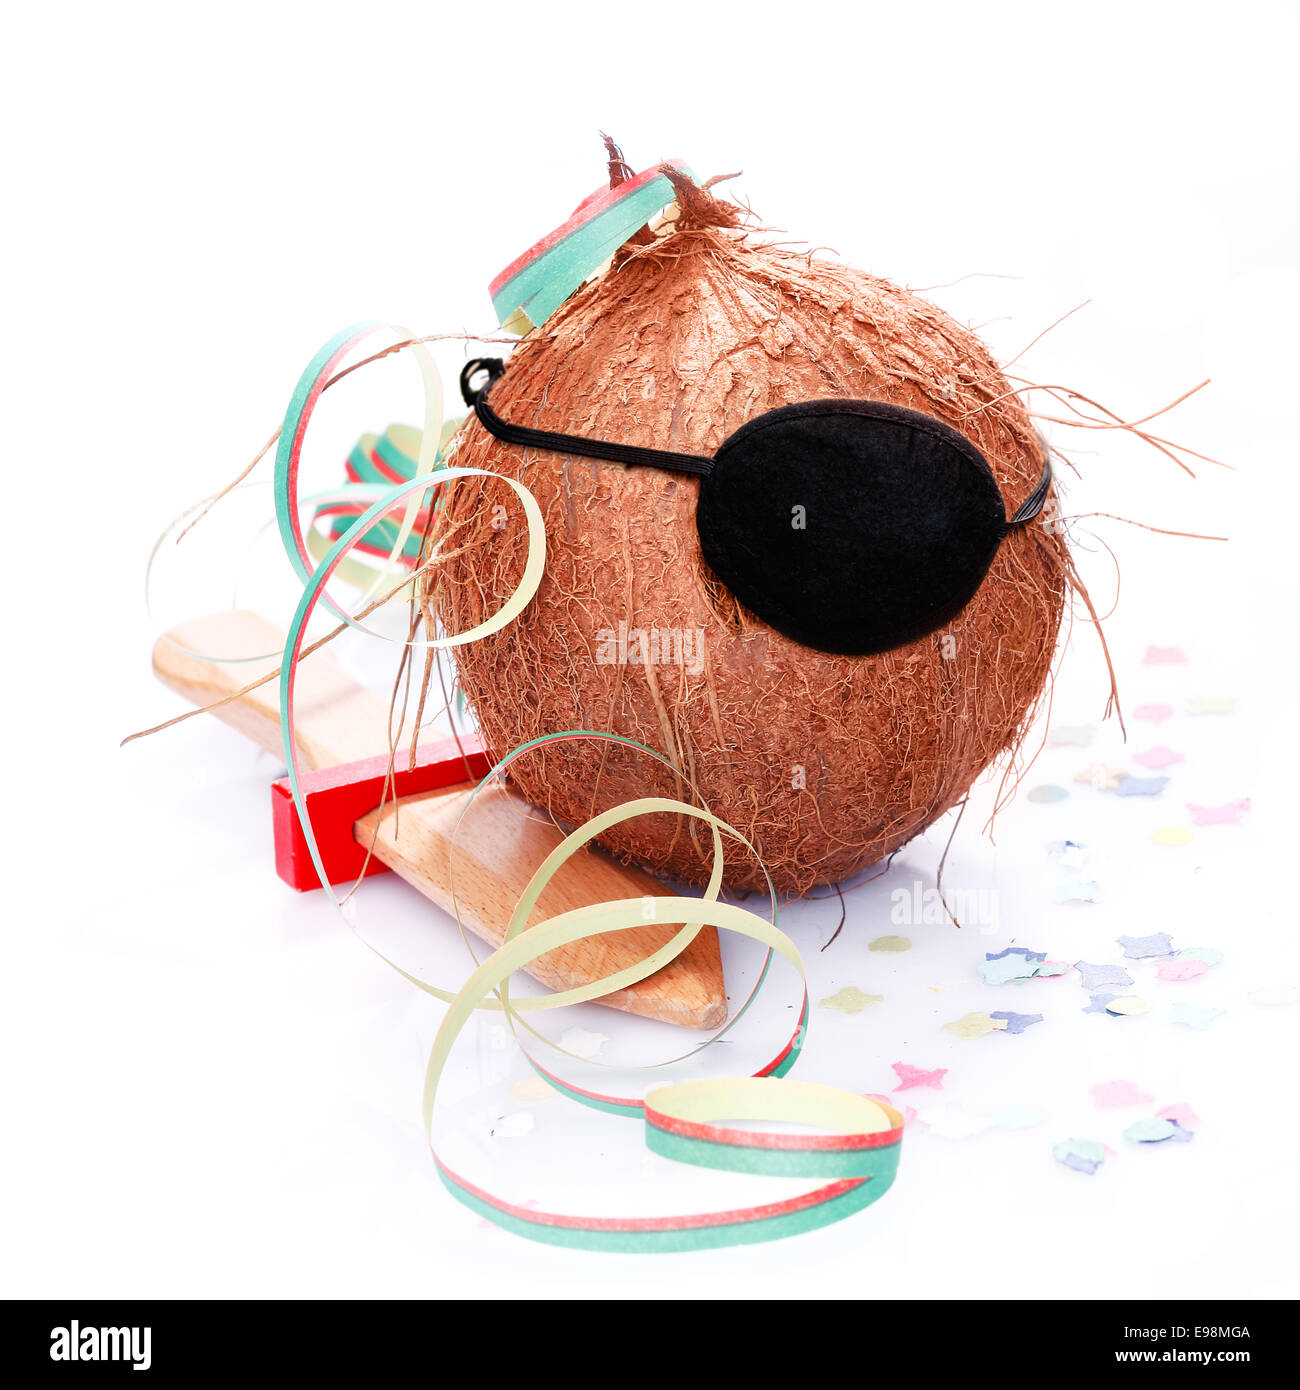 Kokosnuss mit einer Augenklappe, Konfetti und ein Papier-Streamer. Für kleine Piraten und Karibik und tropische Konzepte. Stockfoto